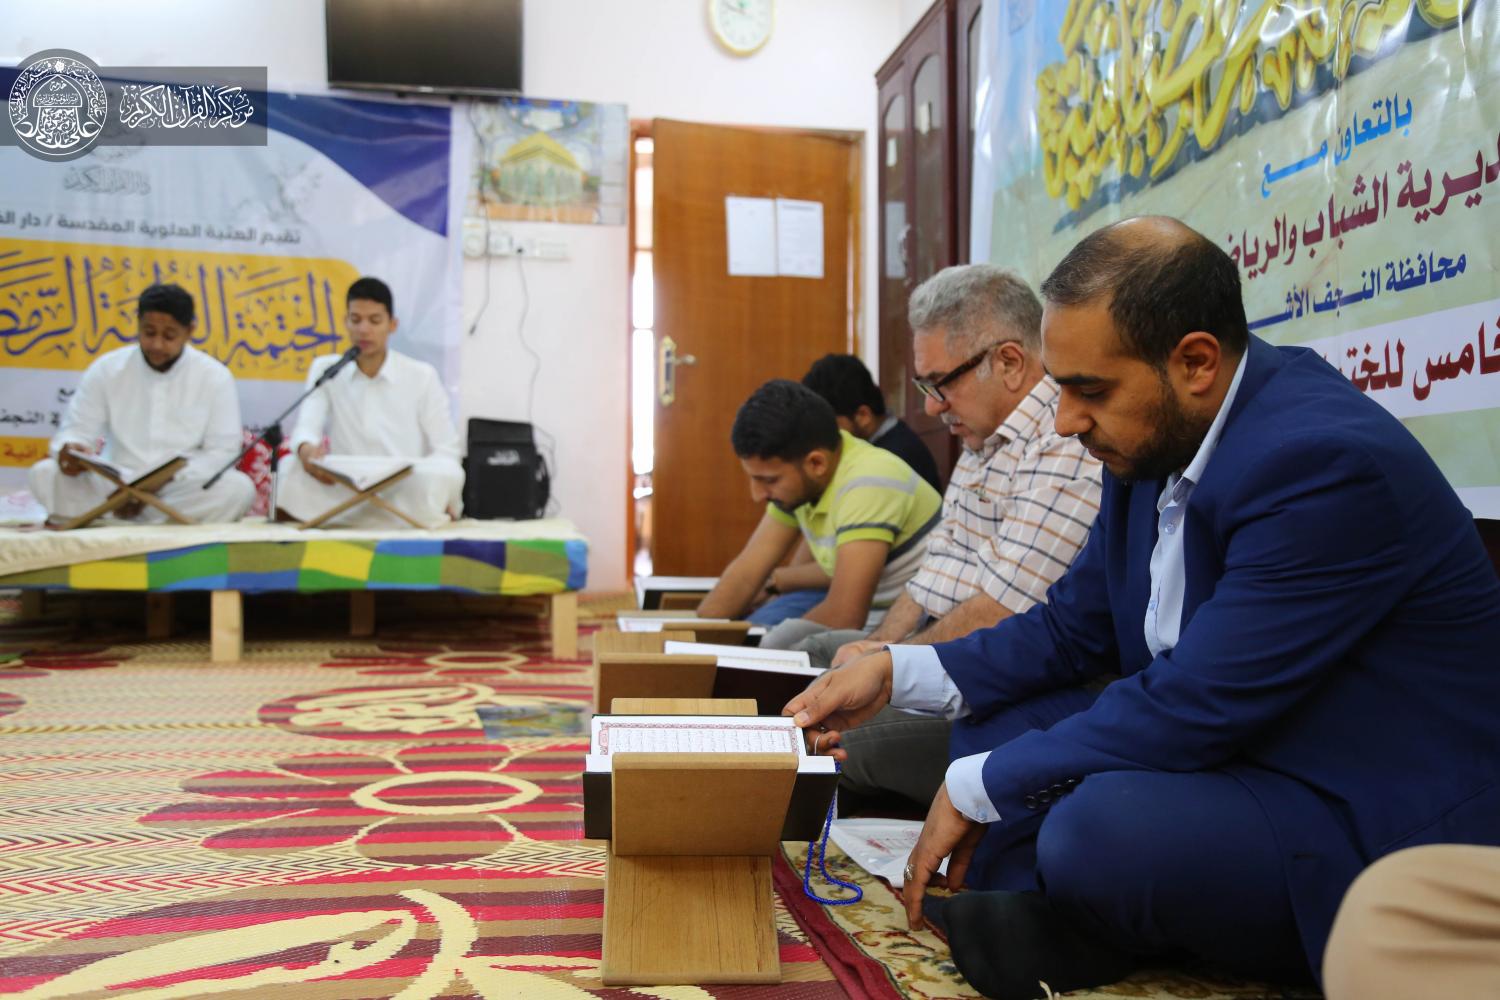  المشروع الوطني الخامس للختمات القرآنية في المساجد والحسينيات | 2019